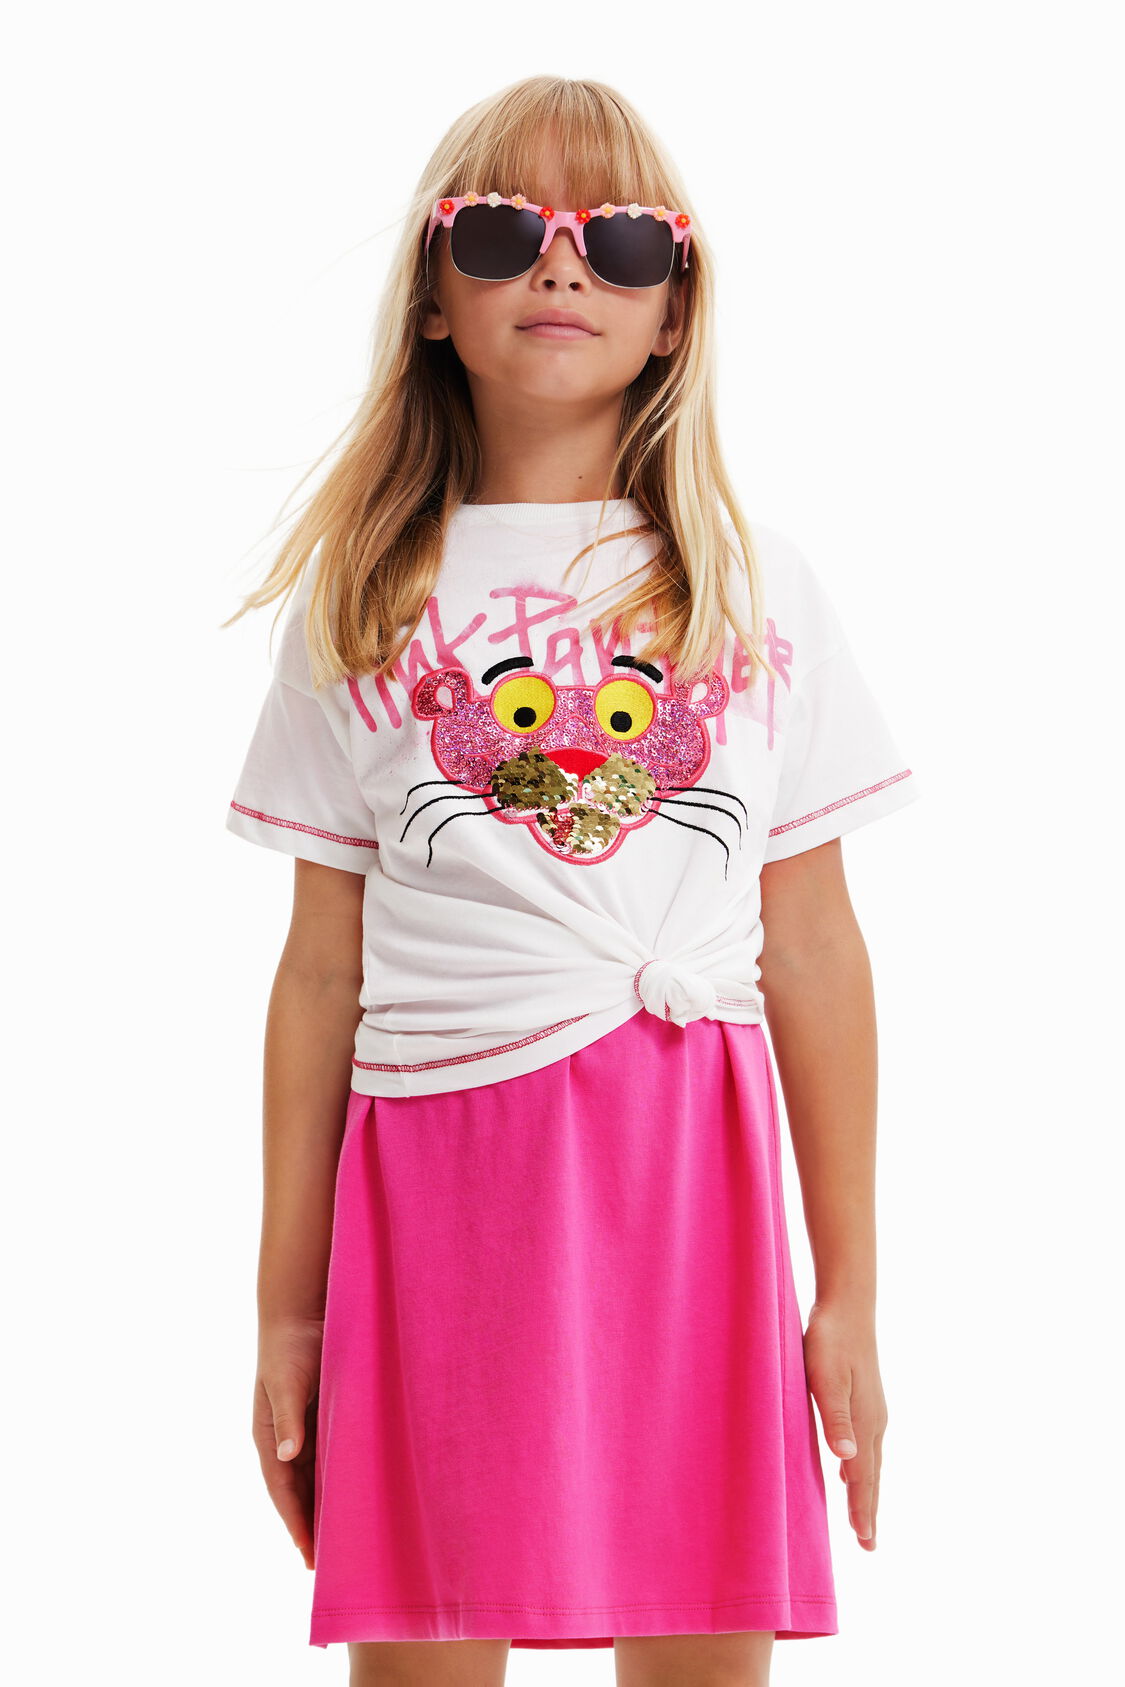 Camiseta Pantera lentejuelas niña I Desigual.com